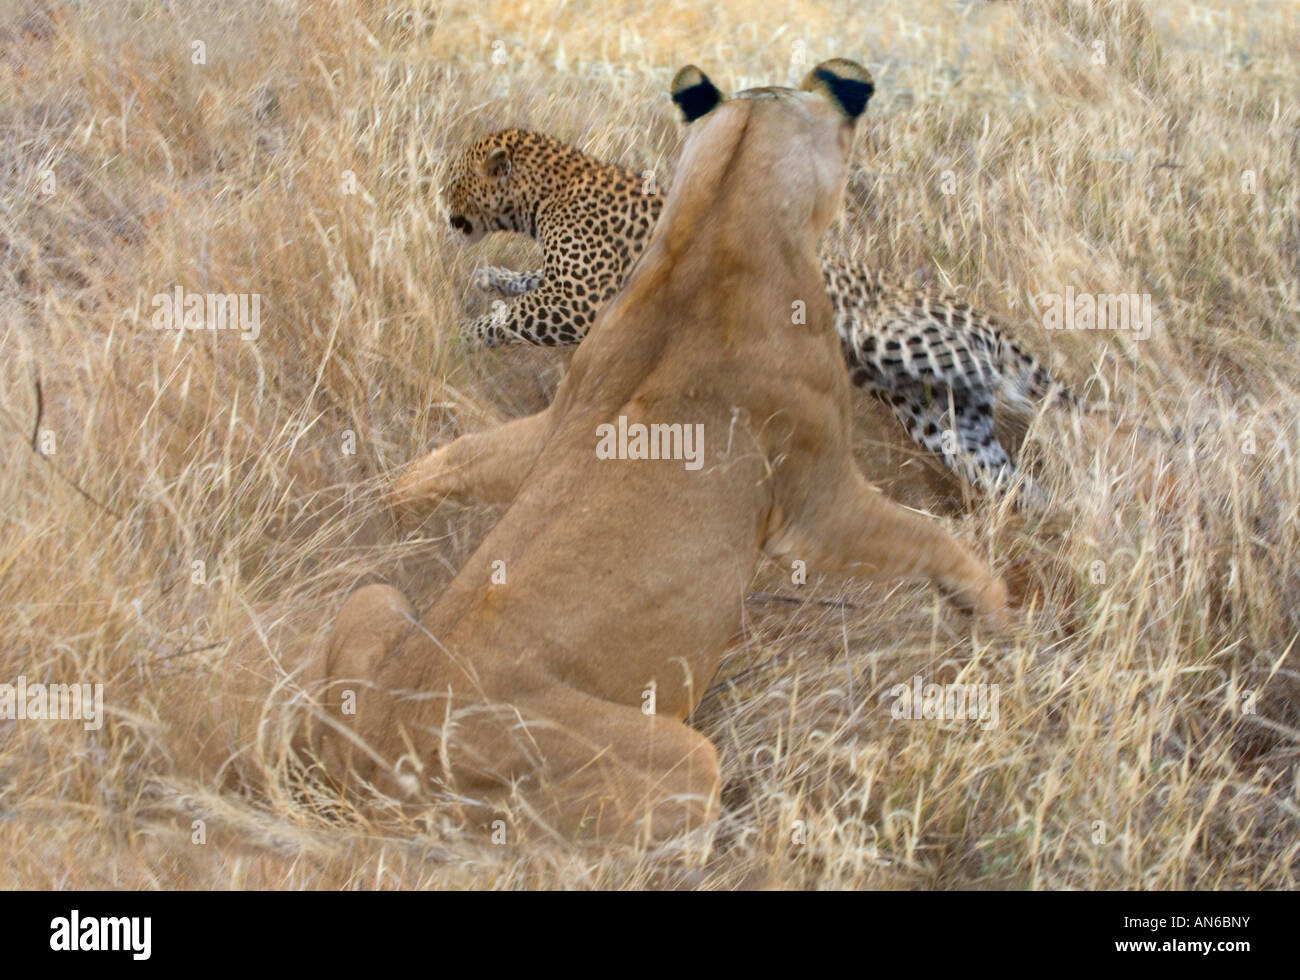 Female lion attacking leopard, Samburu Nature Reserve, Kenya Stock Photo